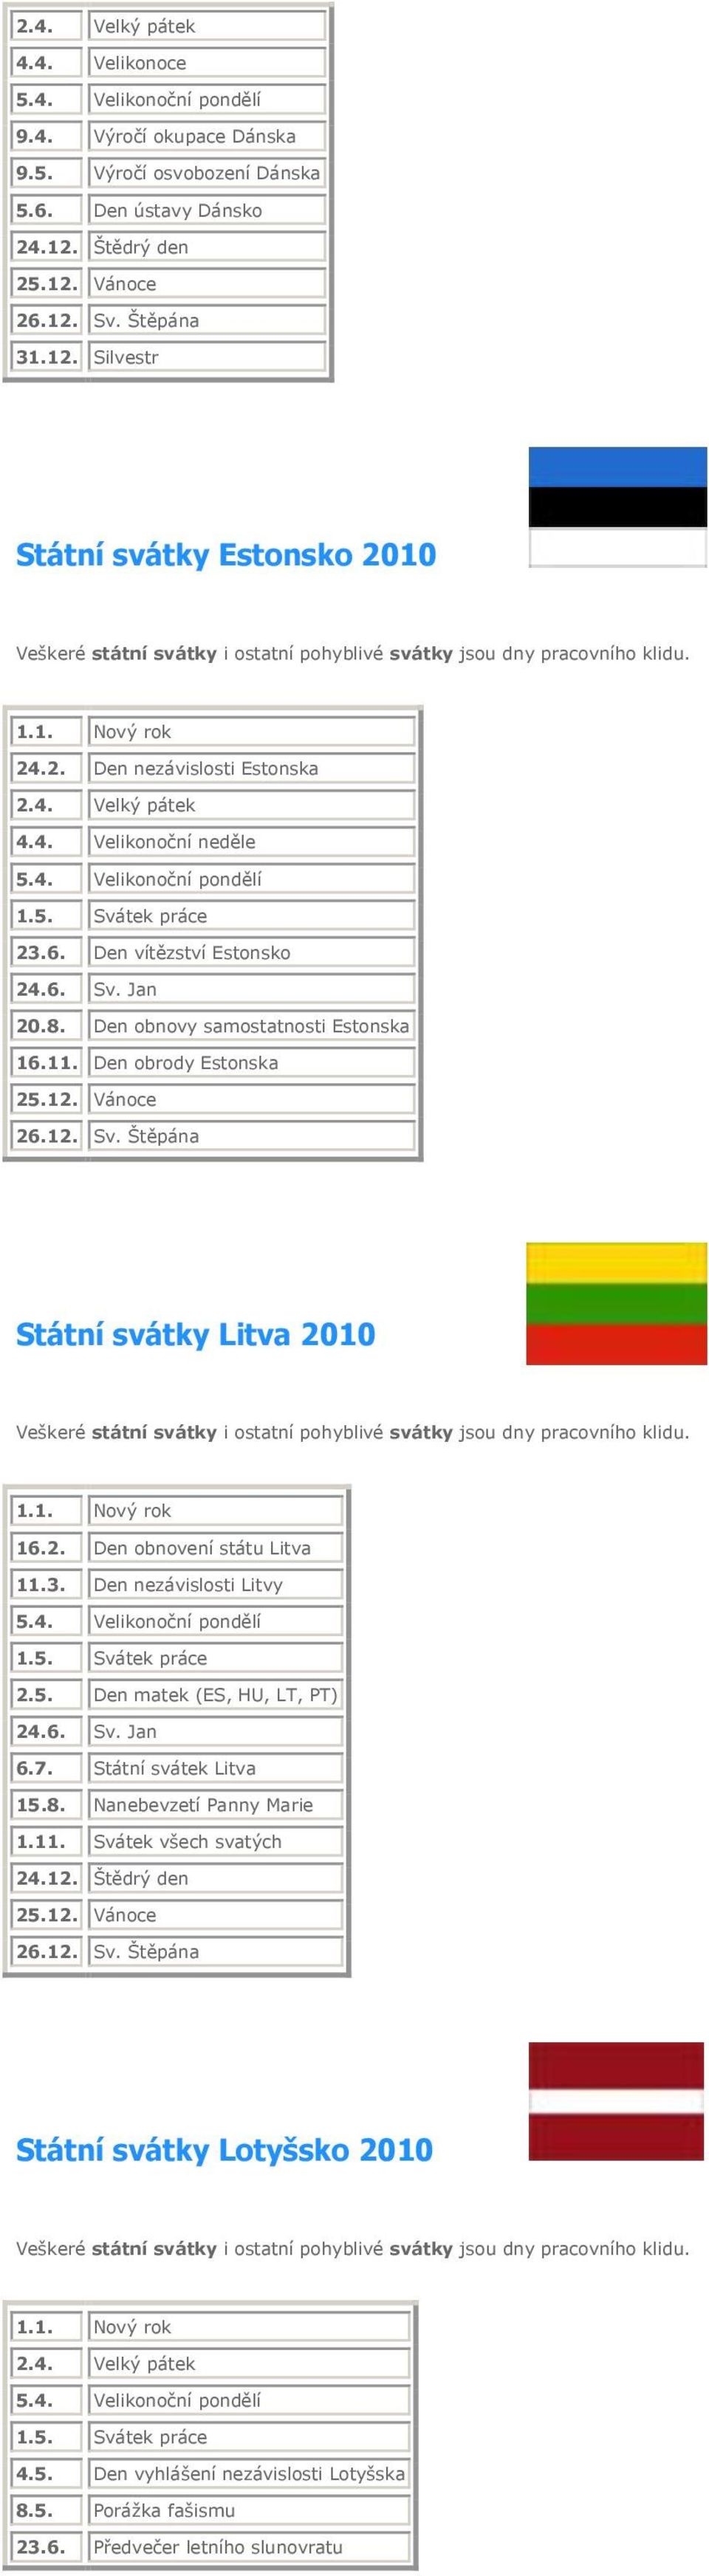 2. Den obnovení státu Litva 11.3. Den nezávislosti Litvy 2.5. Den matek (ES, HU, LT, PT) 24.6. Sv. Jan 6.7. Státní svátek Litva 24.12. Štědrý den 26.12. Sv. Štěpána Státní svátky Lotyšsko 2010 4.